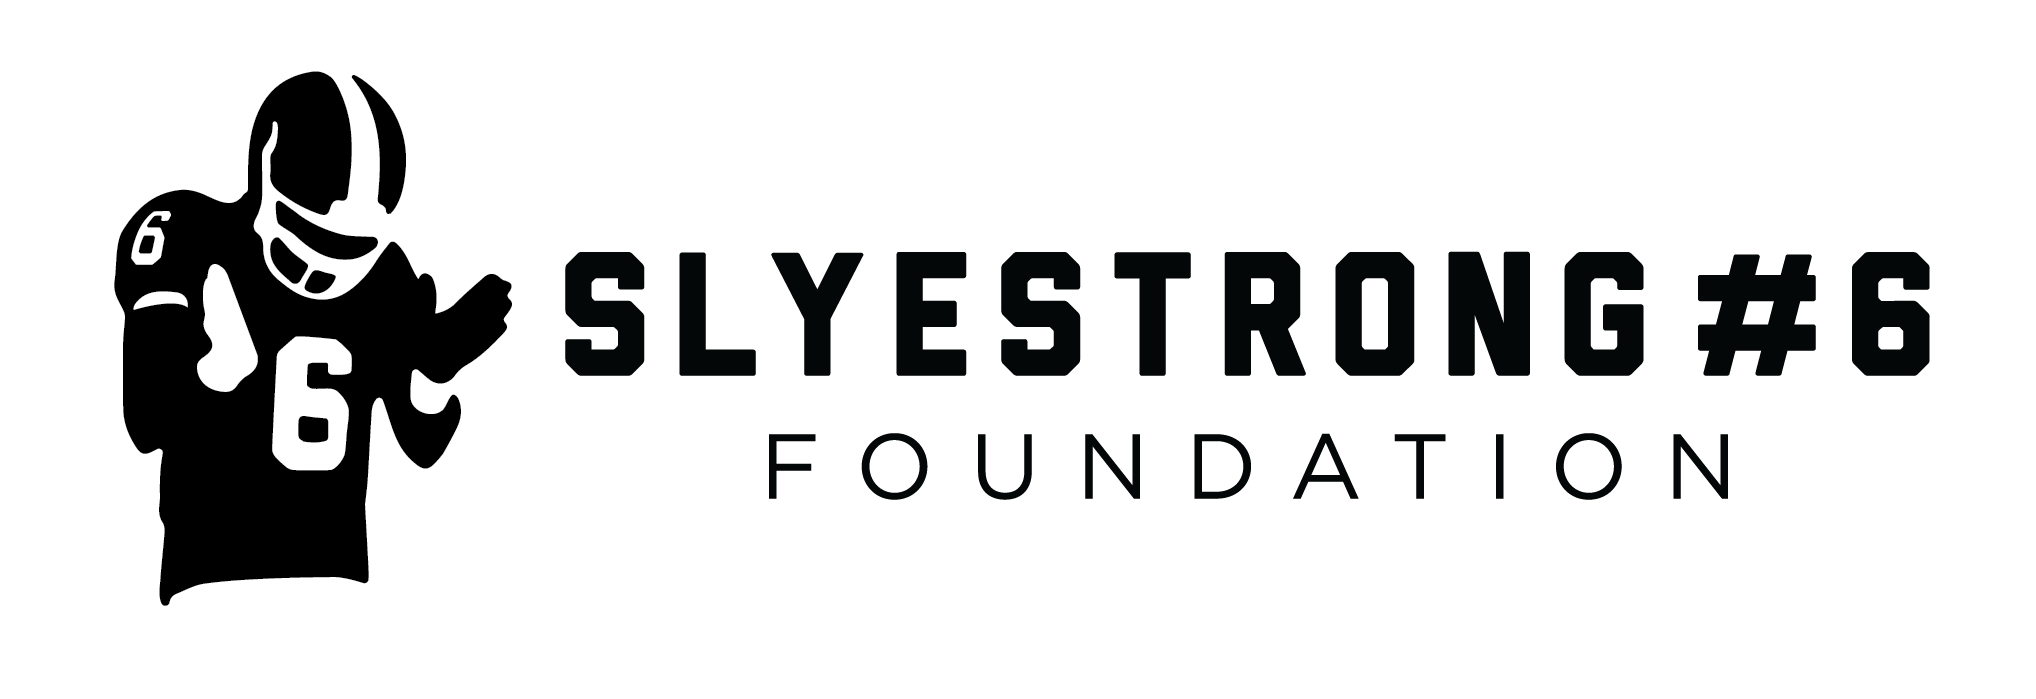 SlyeStrong#6 Foundation